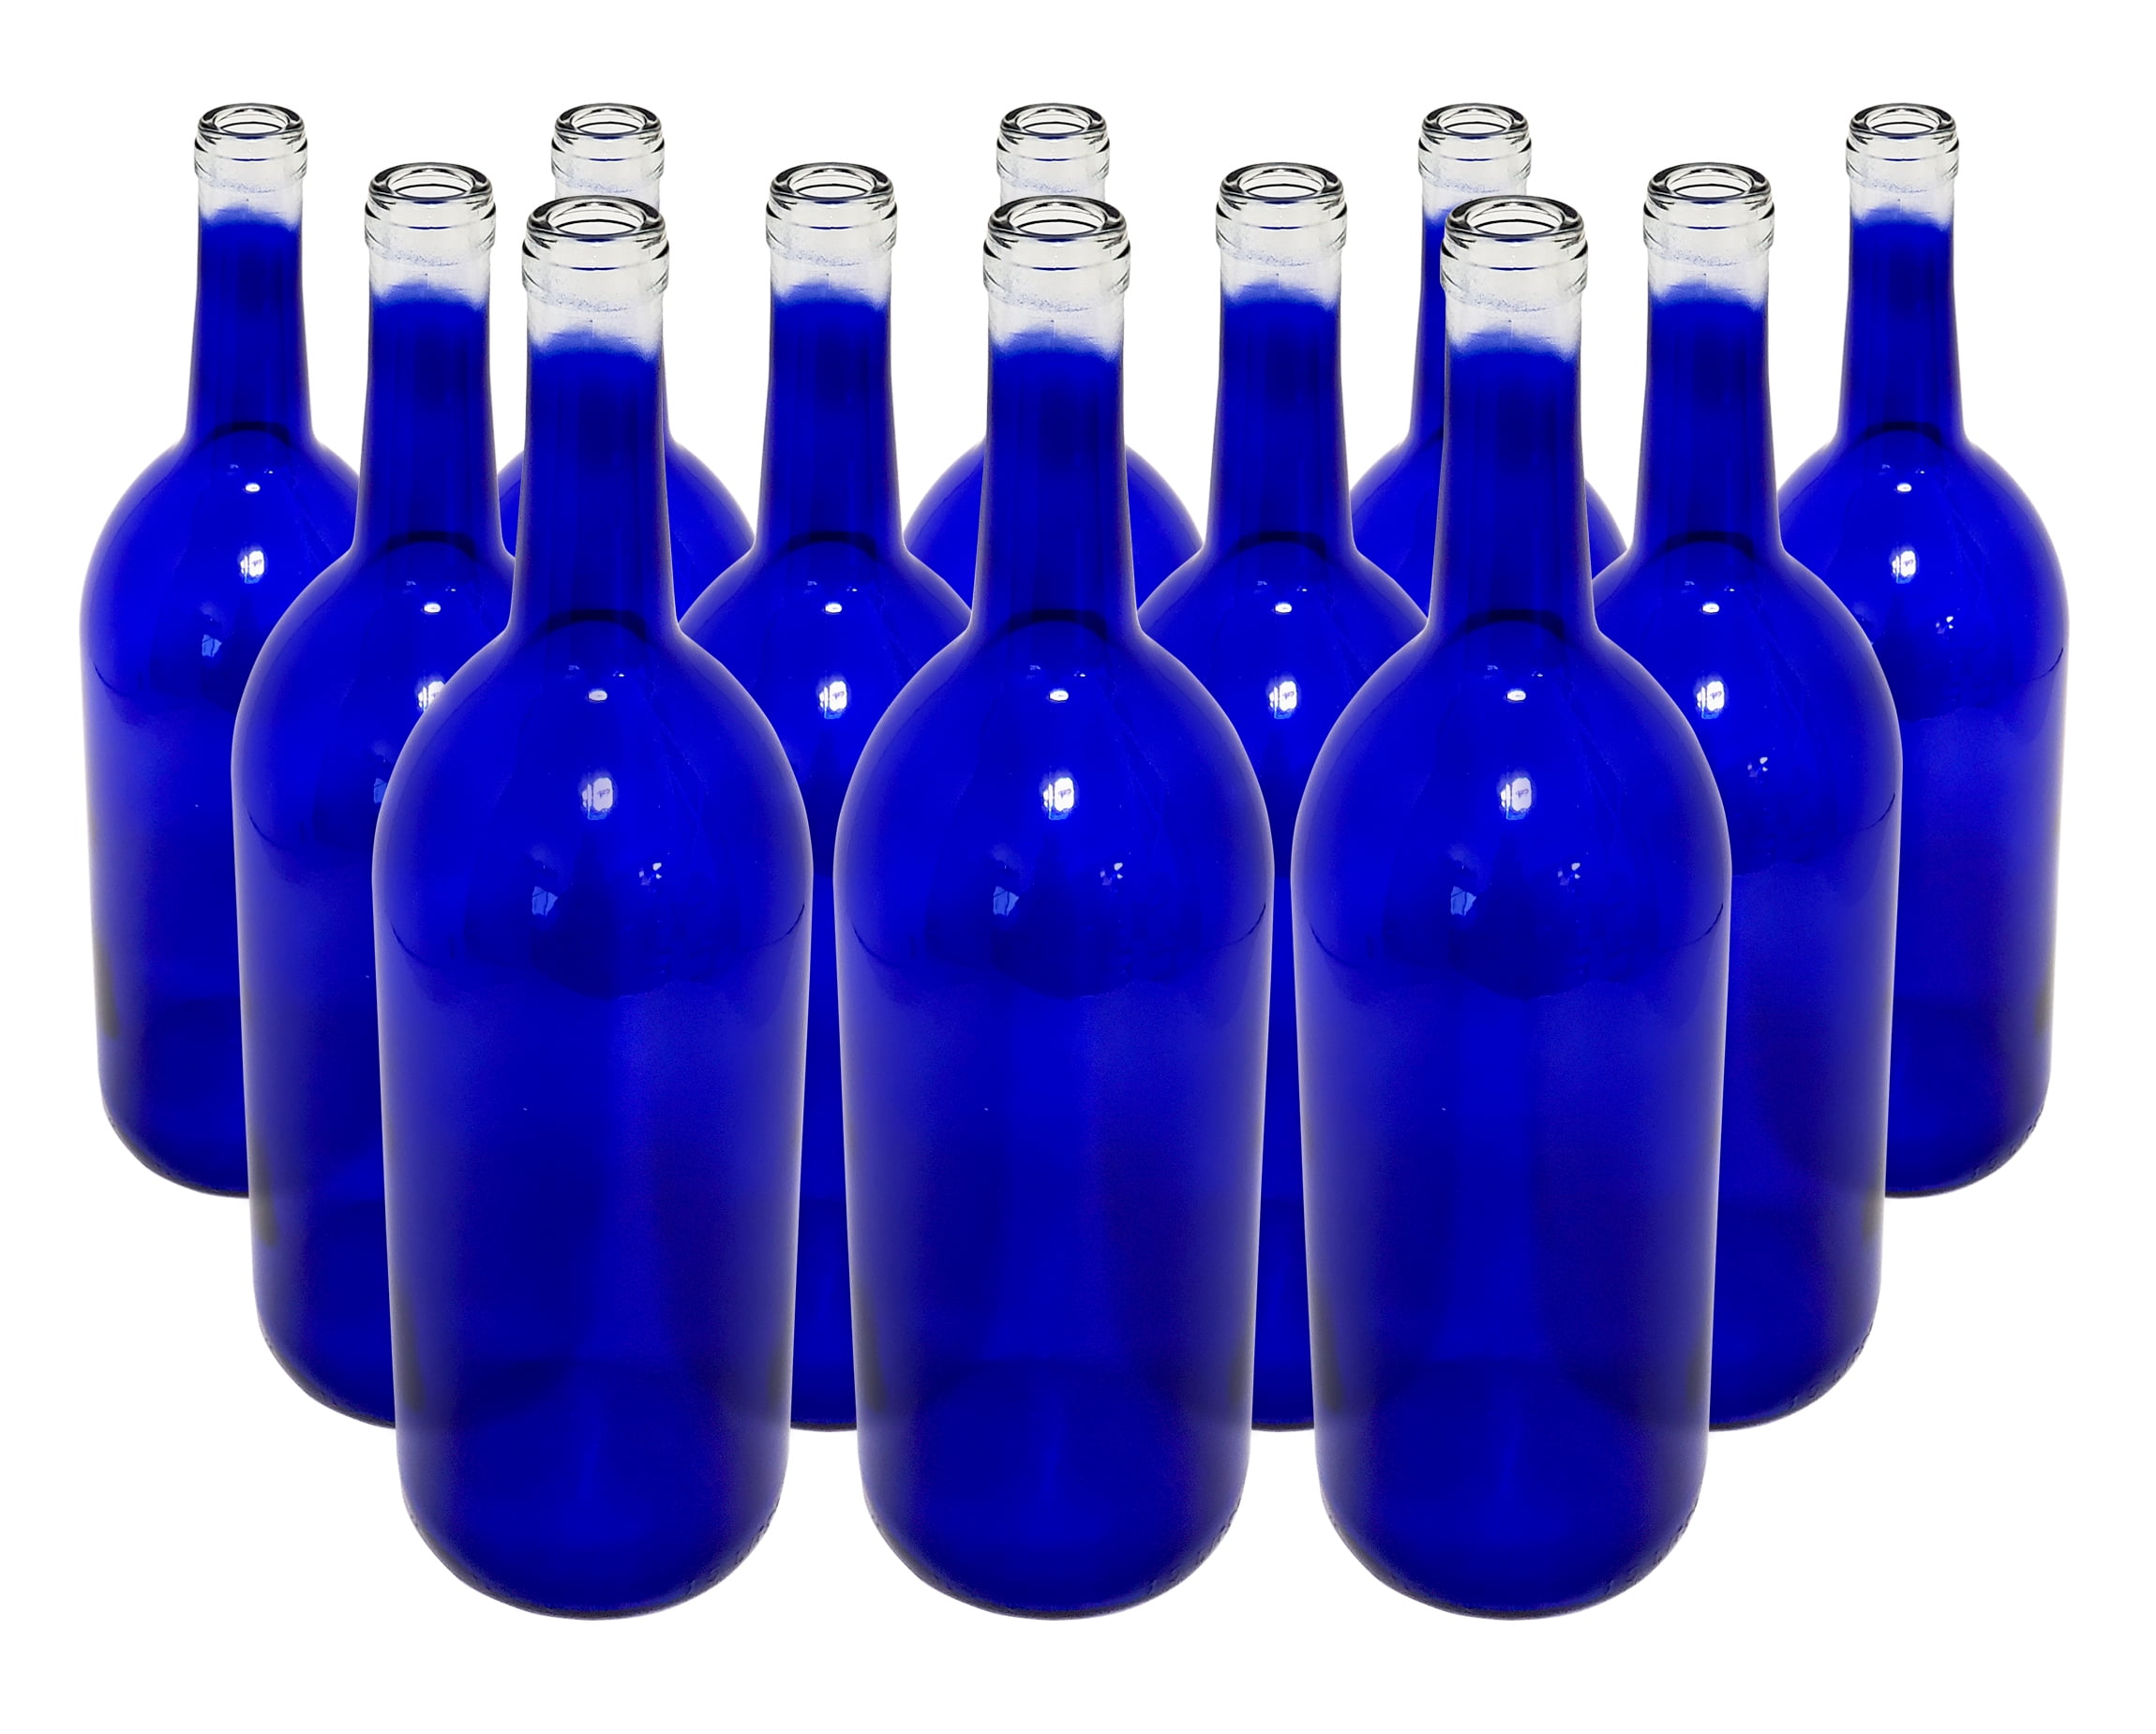 NICE LOT 12 COBALT BLUE GLASS BEER BOTTLES FOR VASES BOTTLE TREES CRAFTS HERBS 